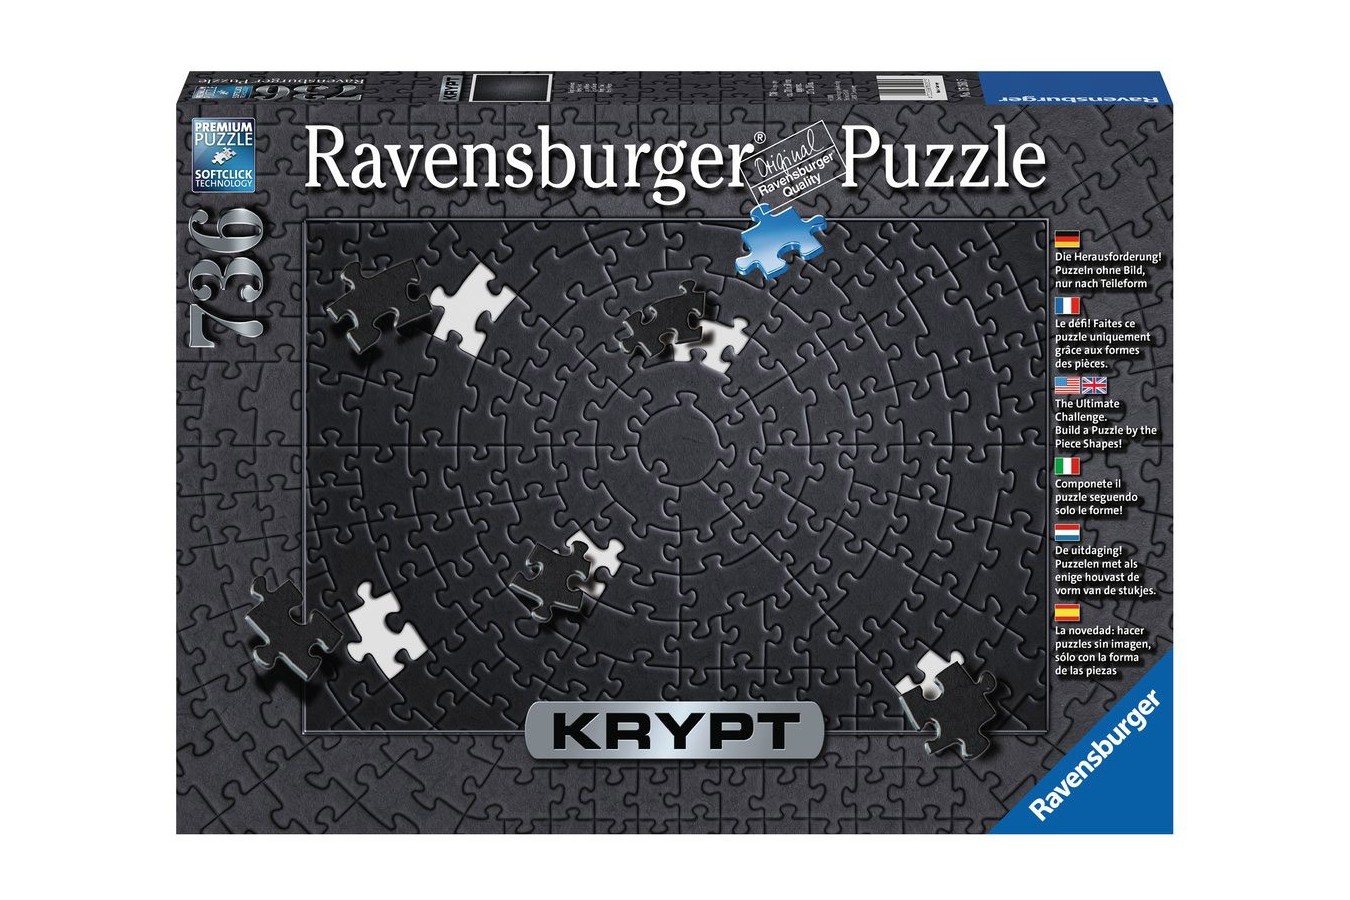 Puzzle Ravensburger - Krypt Black, 736 piese dificile (15260)